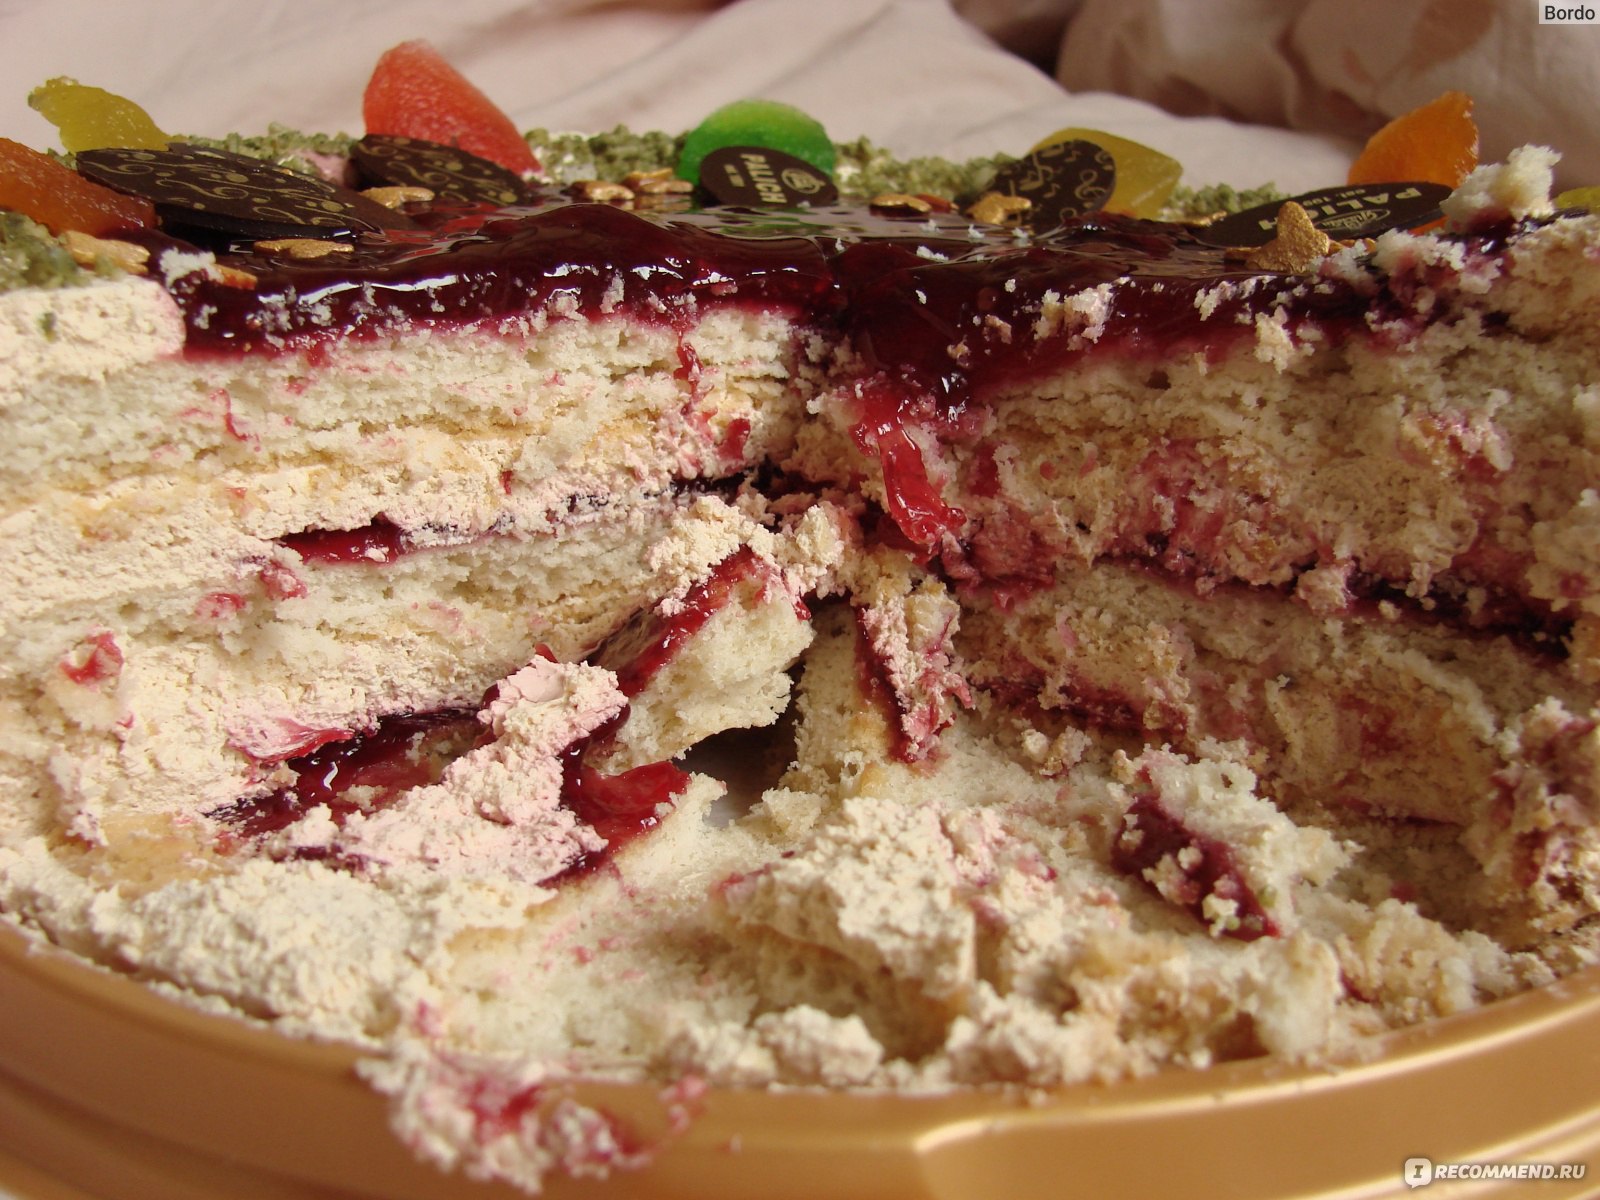 Торт У Палыча Любимый, новый: срез торта, распределение конфитюра, песочных коржей и крема